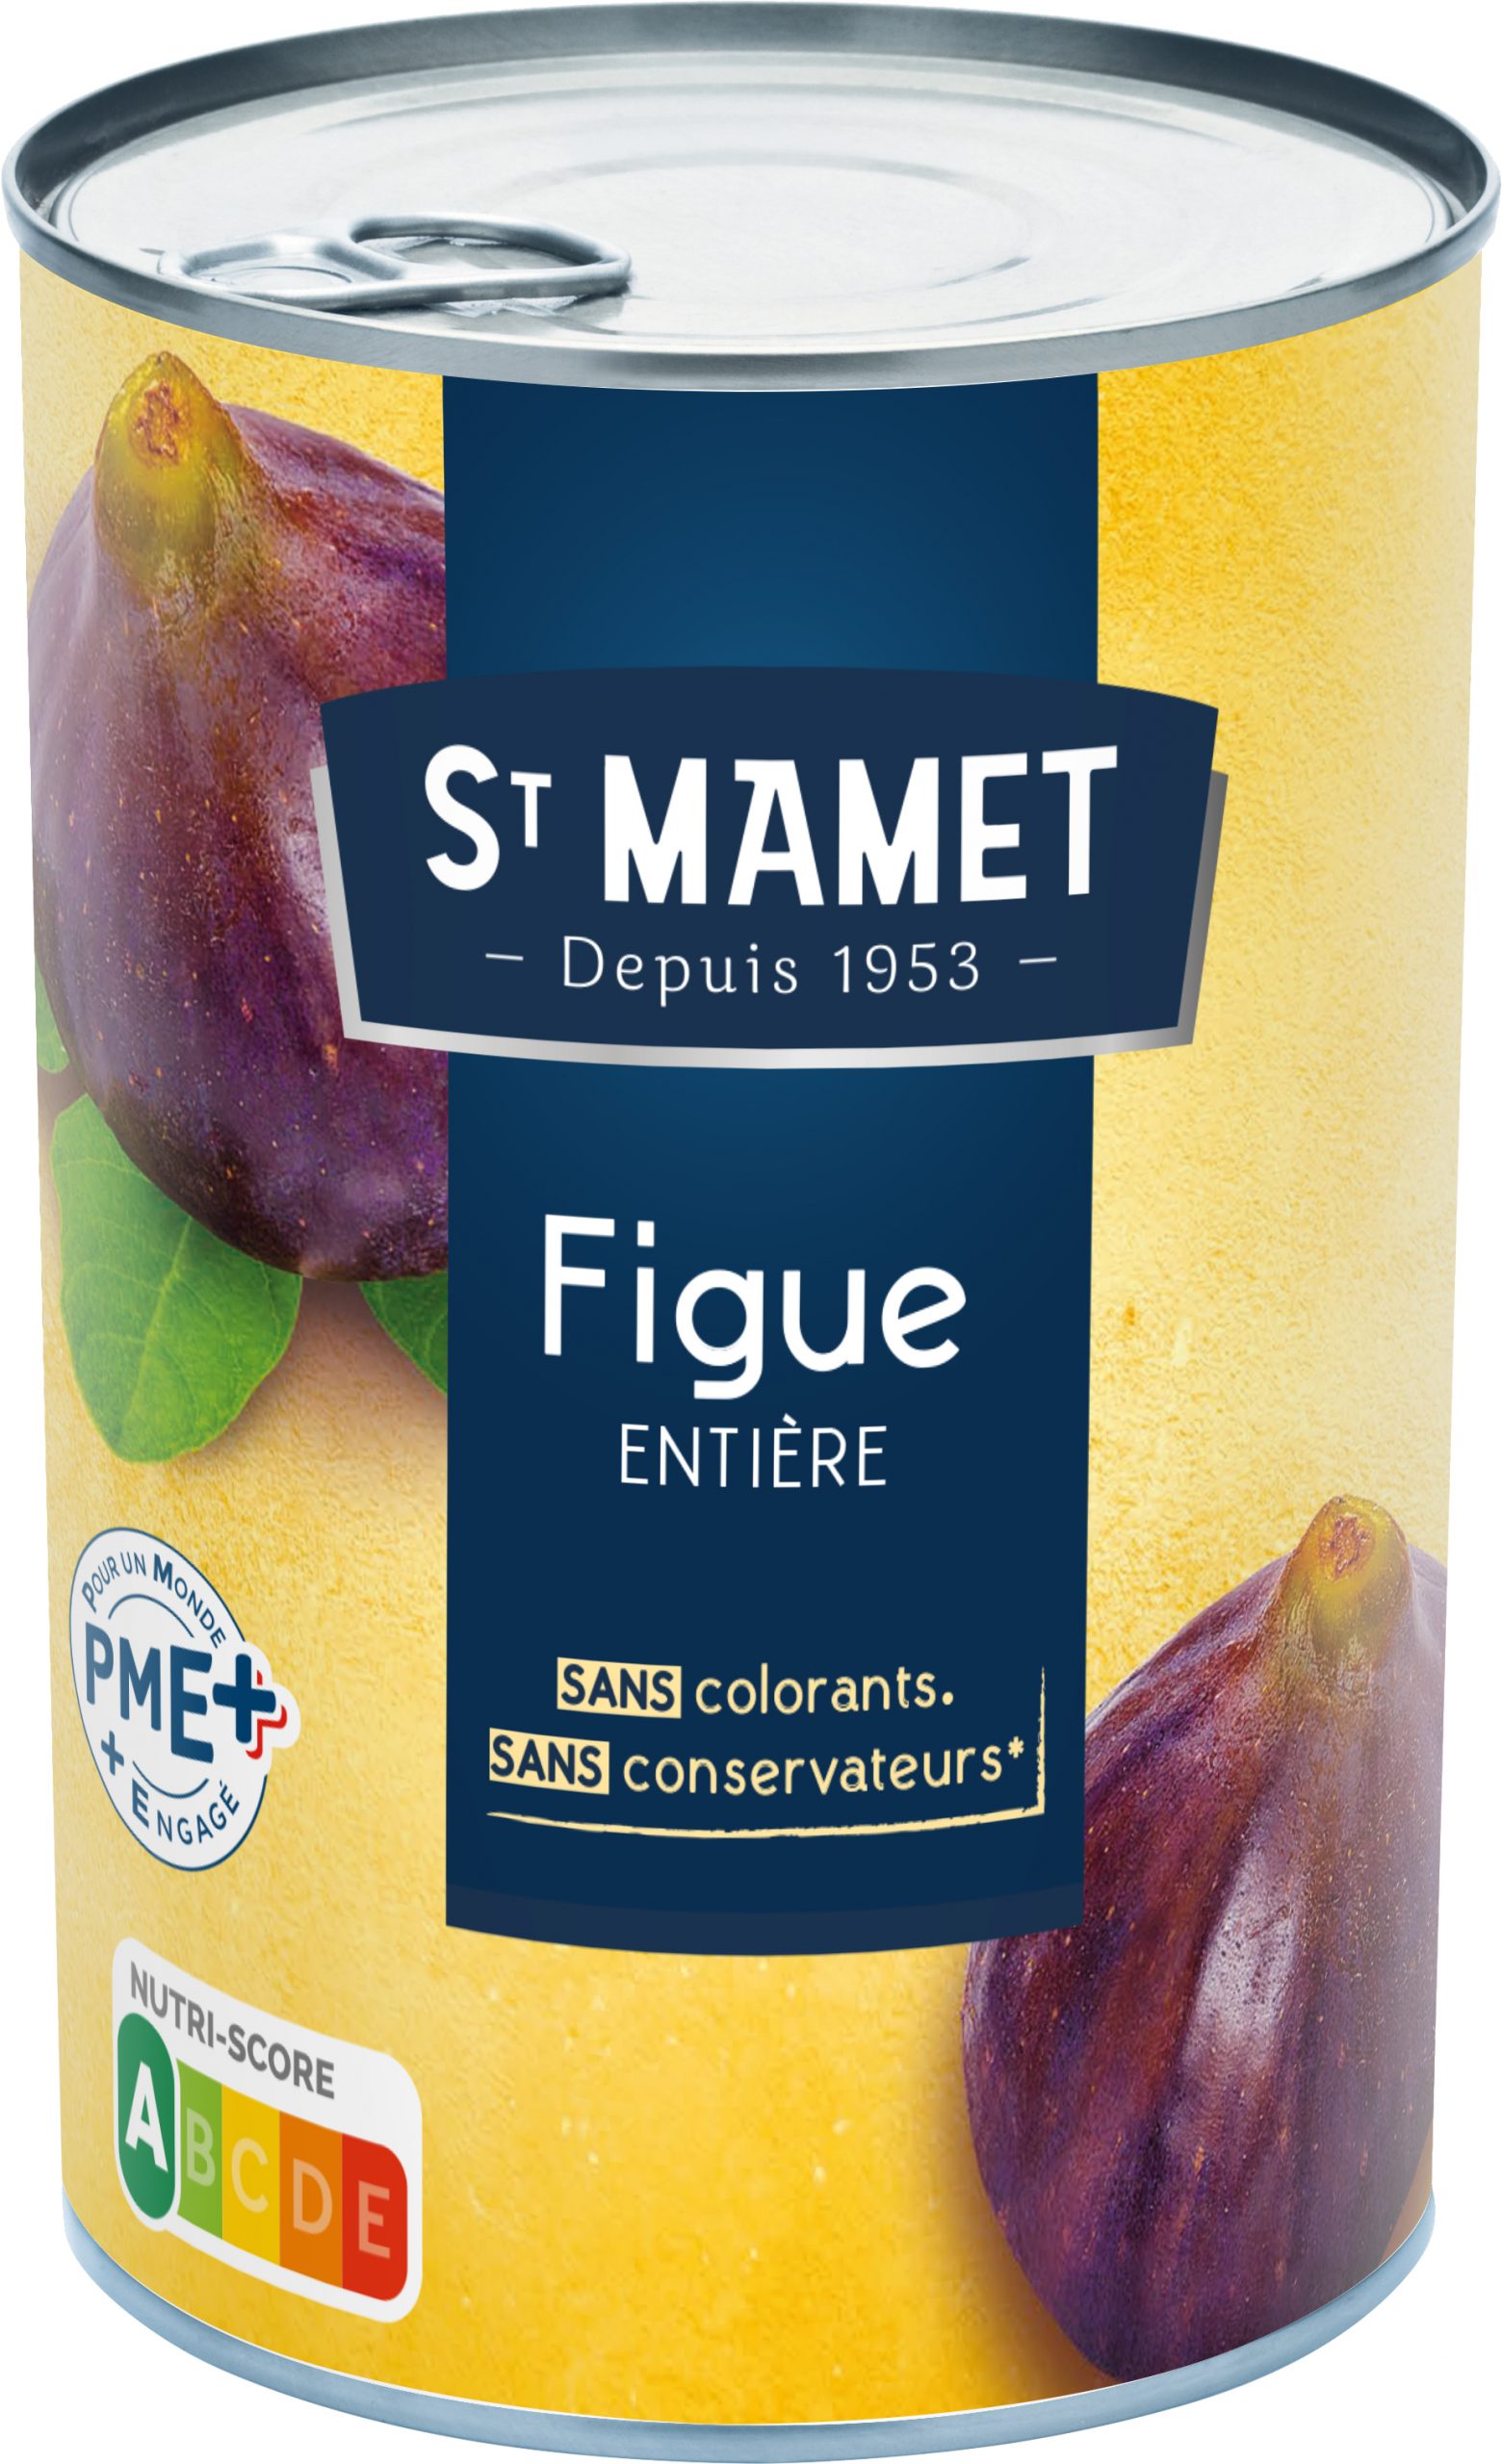 Figue STMamet scaled - St Mamet met les figues en conserve !